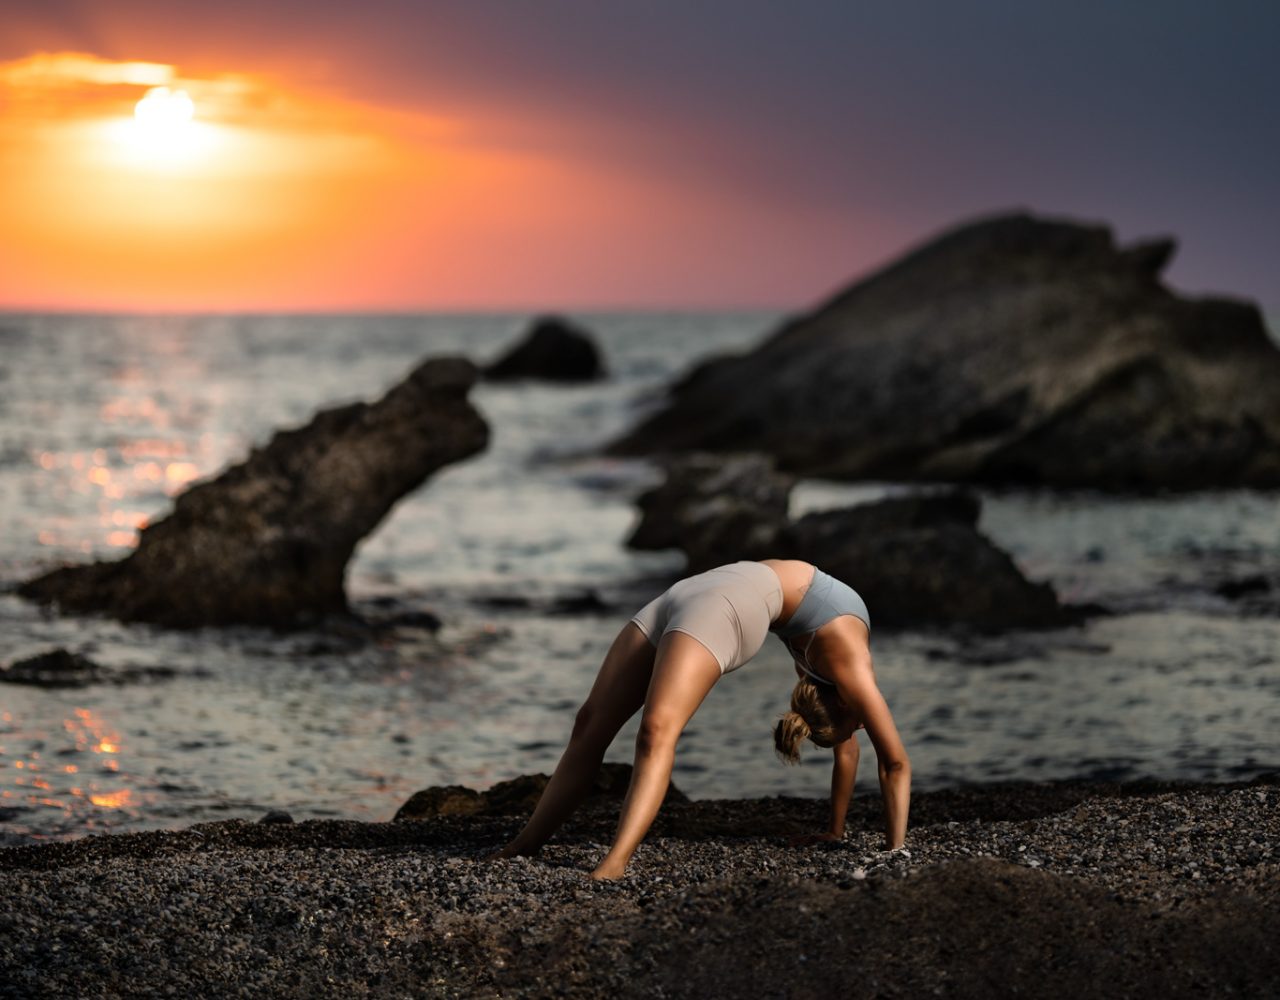 Frau macht eine Bruecke am Strand vor einem Dramatischen Sonnenuntergang. Im Hintergrund befinden sich Felsen im Meer.